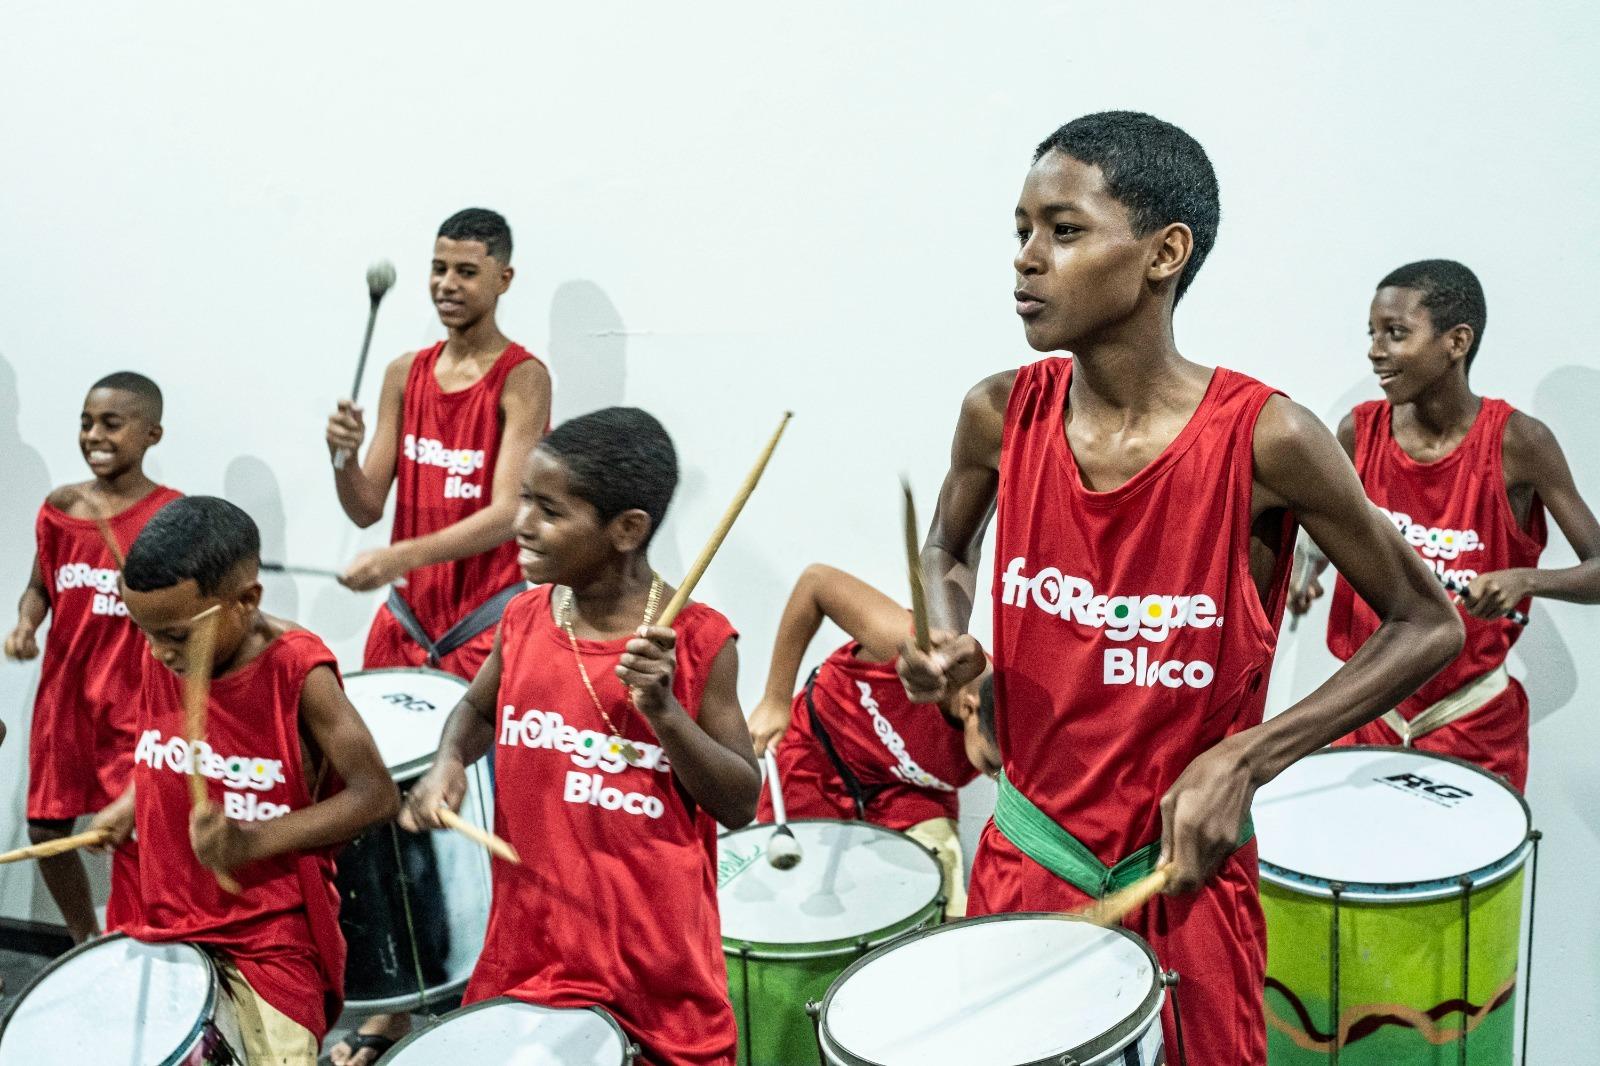 AfroReggae e Globo Transformam a Vida de 150 Crianças Através da Cultura